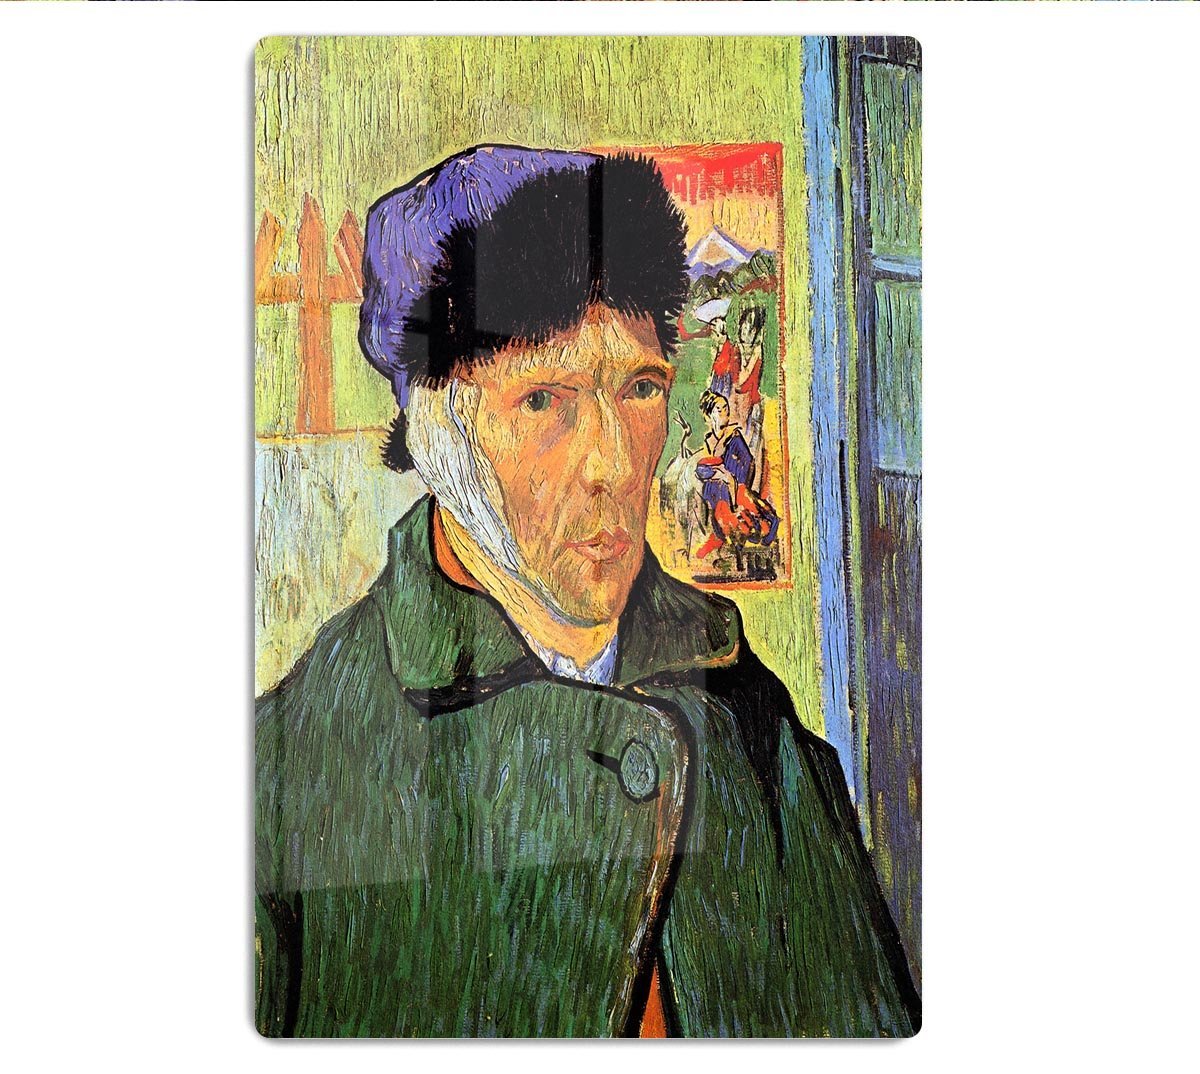 Self-Portrait 11 by Van Gogh HD Metal Print